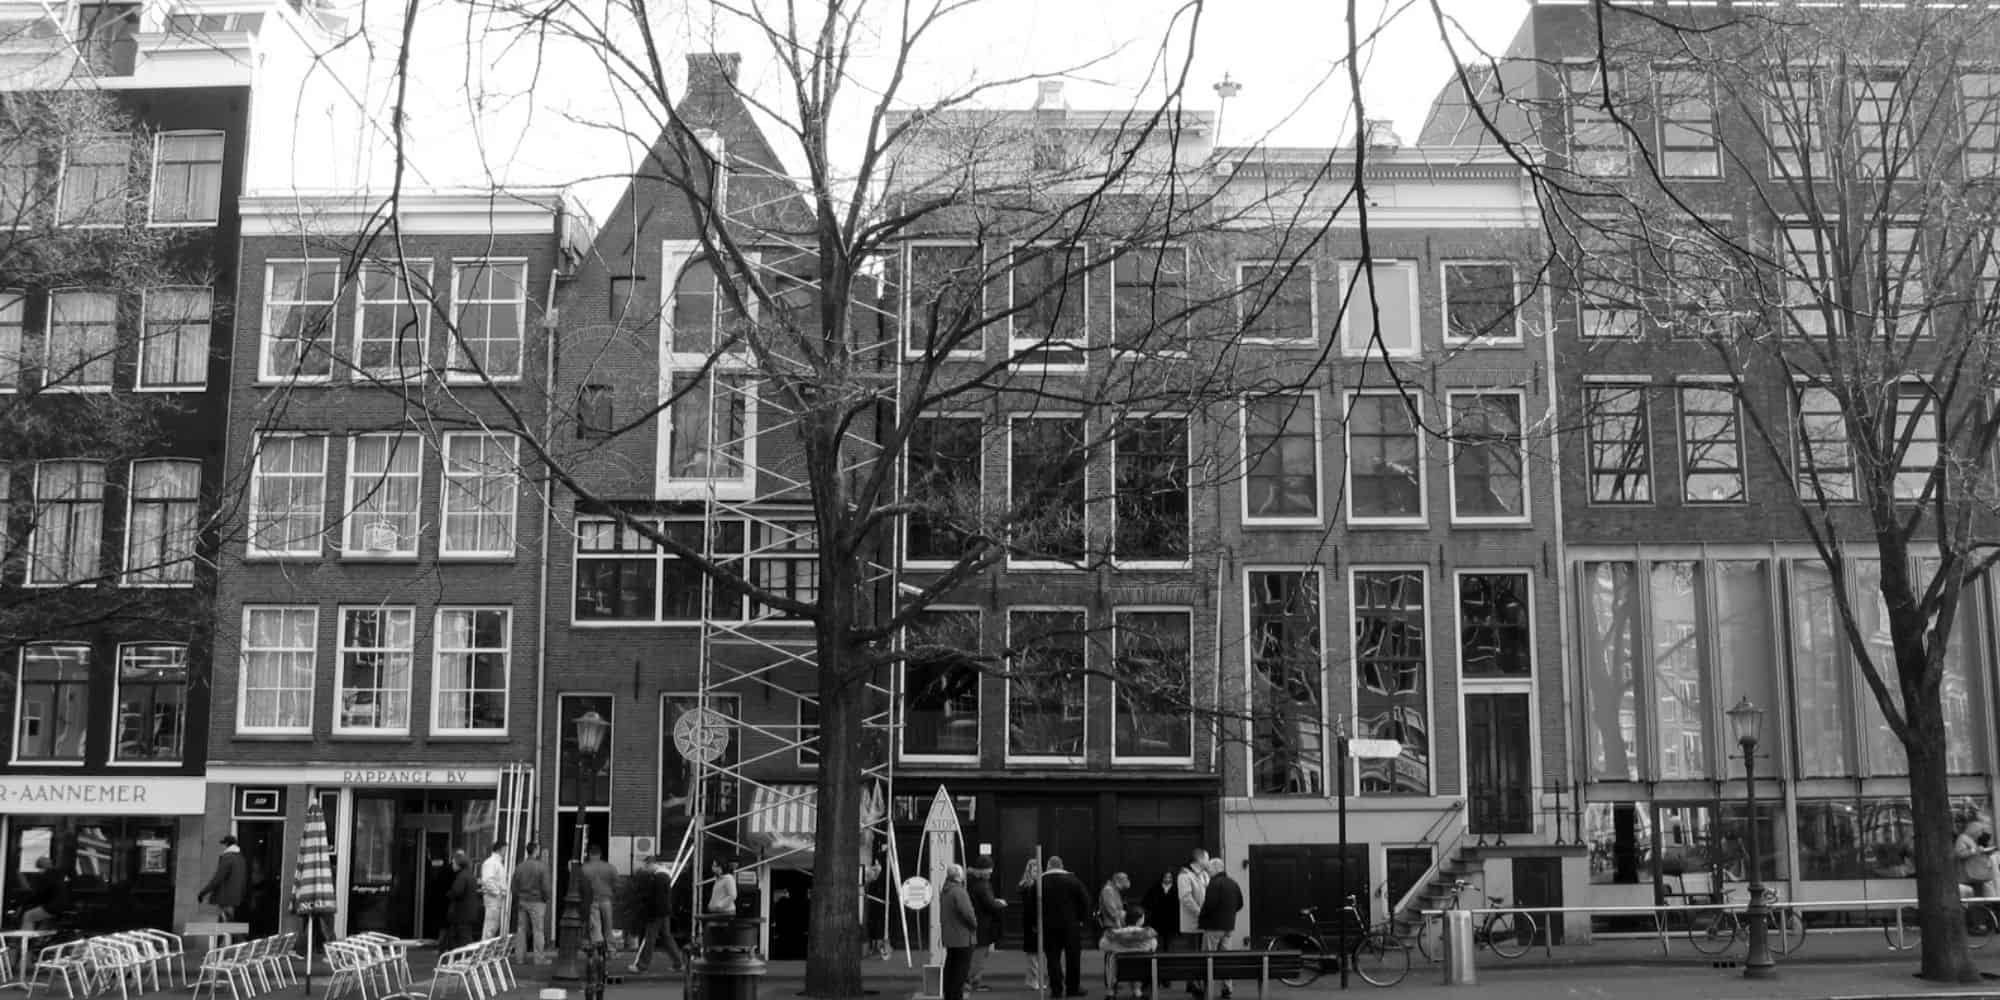 Dark tourism - Anne Frank house in Amsterdam